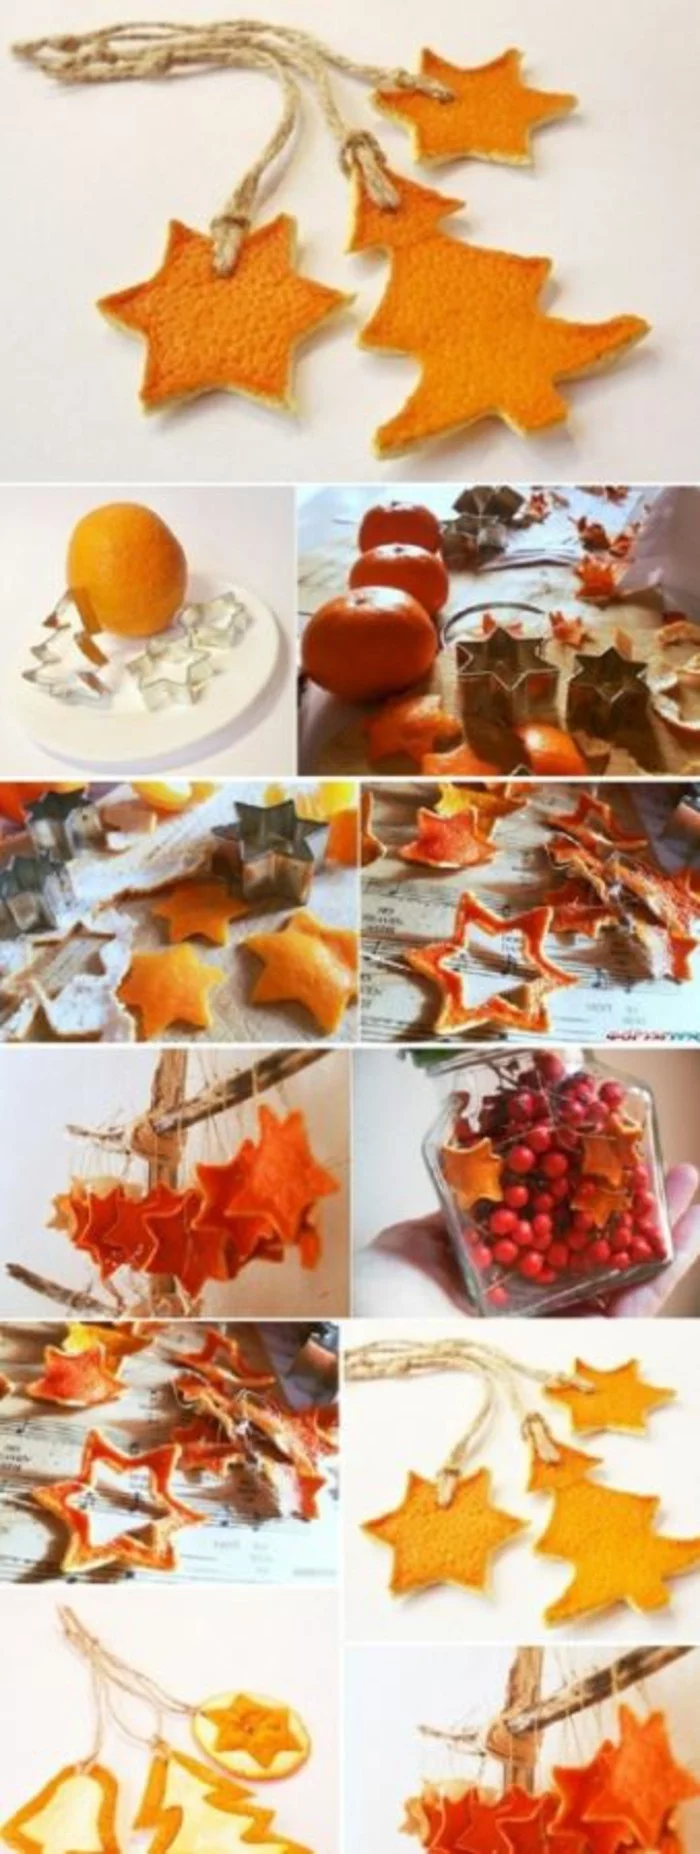 weihnachtsschmuckbasteln mit naturmaterialien aus orangenschale